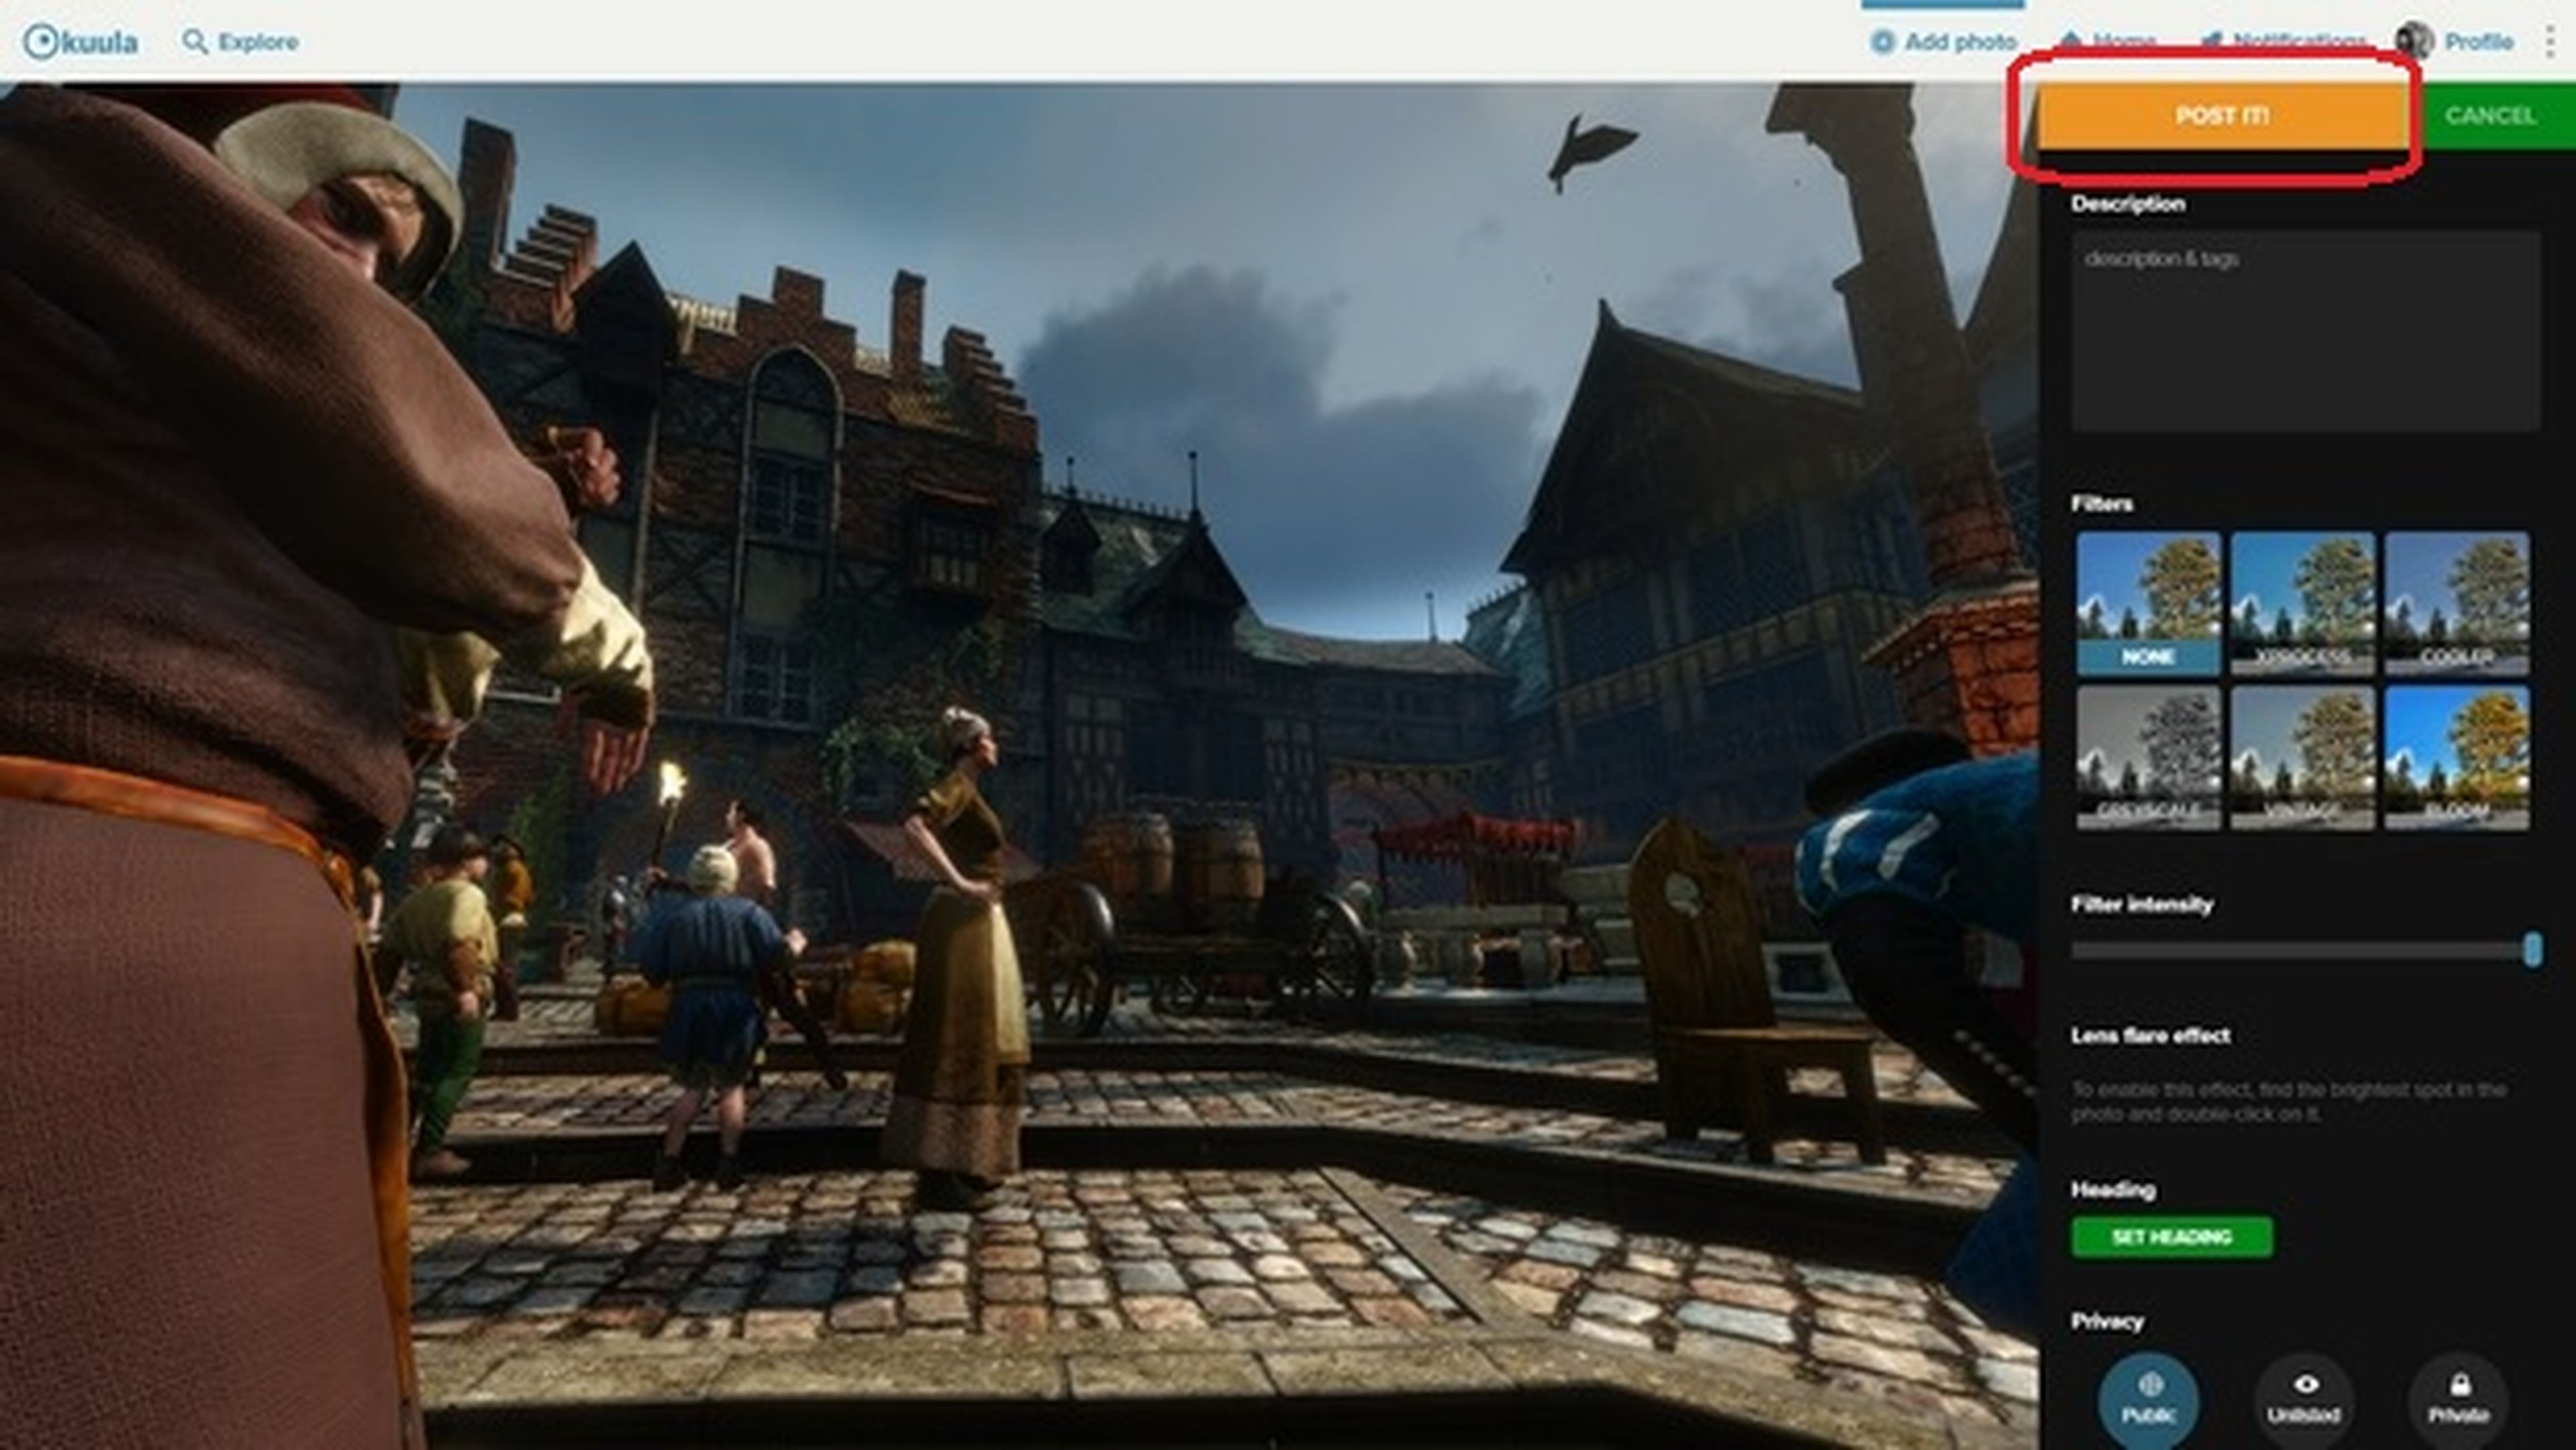 Captura imágenes de 360 grados de tus videojuegos con NVIDIA Ansel